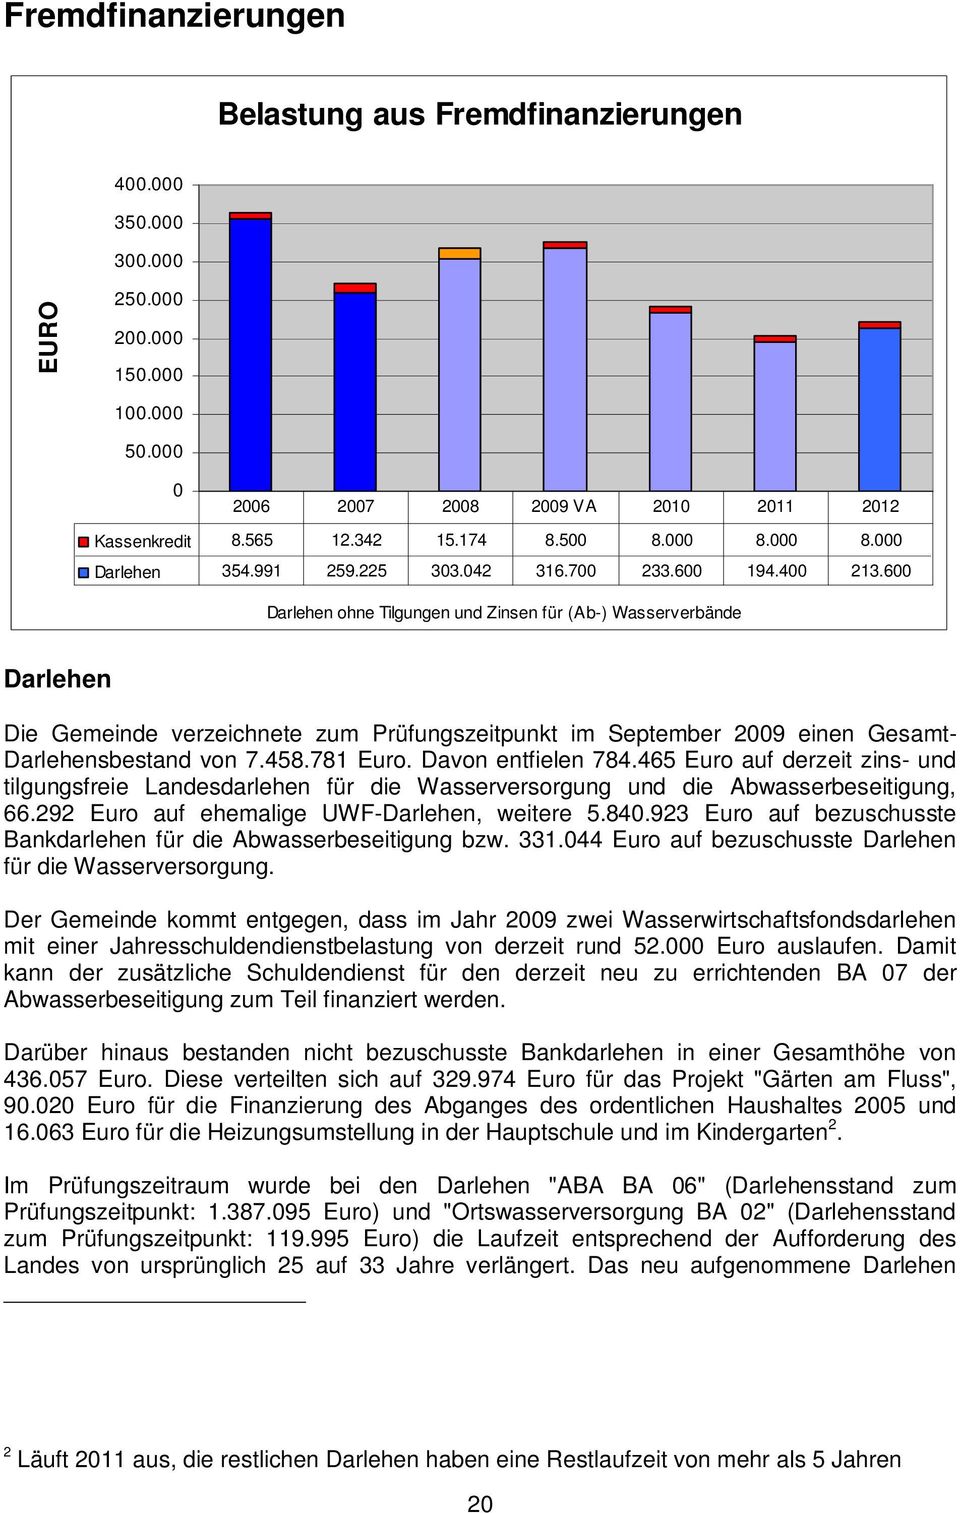 600 Darlehen ohne Tilgungen und Zinsen für (Ab-) Wasserverbände Darlehen Die Gemeinde verzeichnete zum Prüfungszeitpunkt im September 2009 einen Gesamt- Darlehensbestand von 7.458.781 Euro.